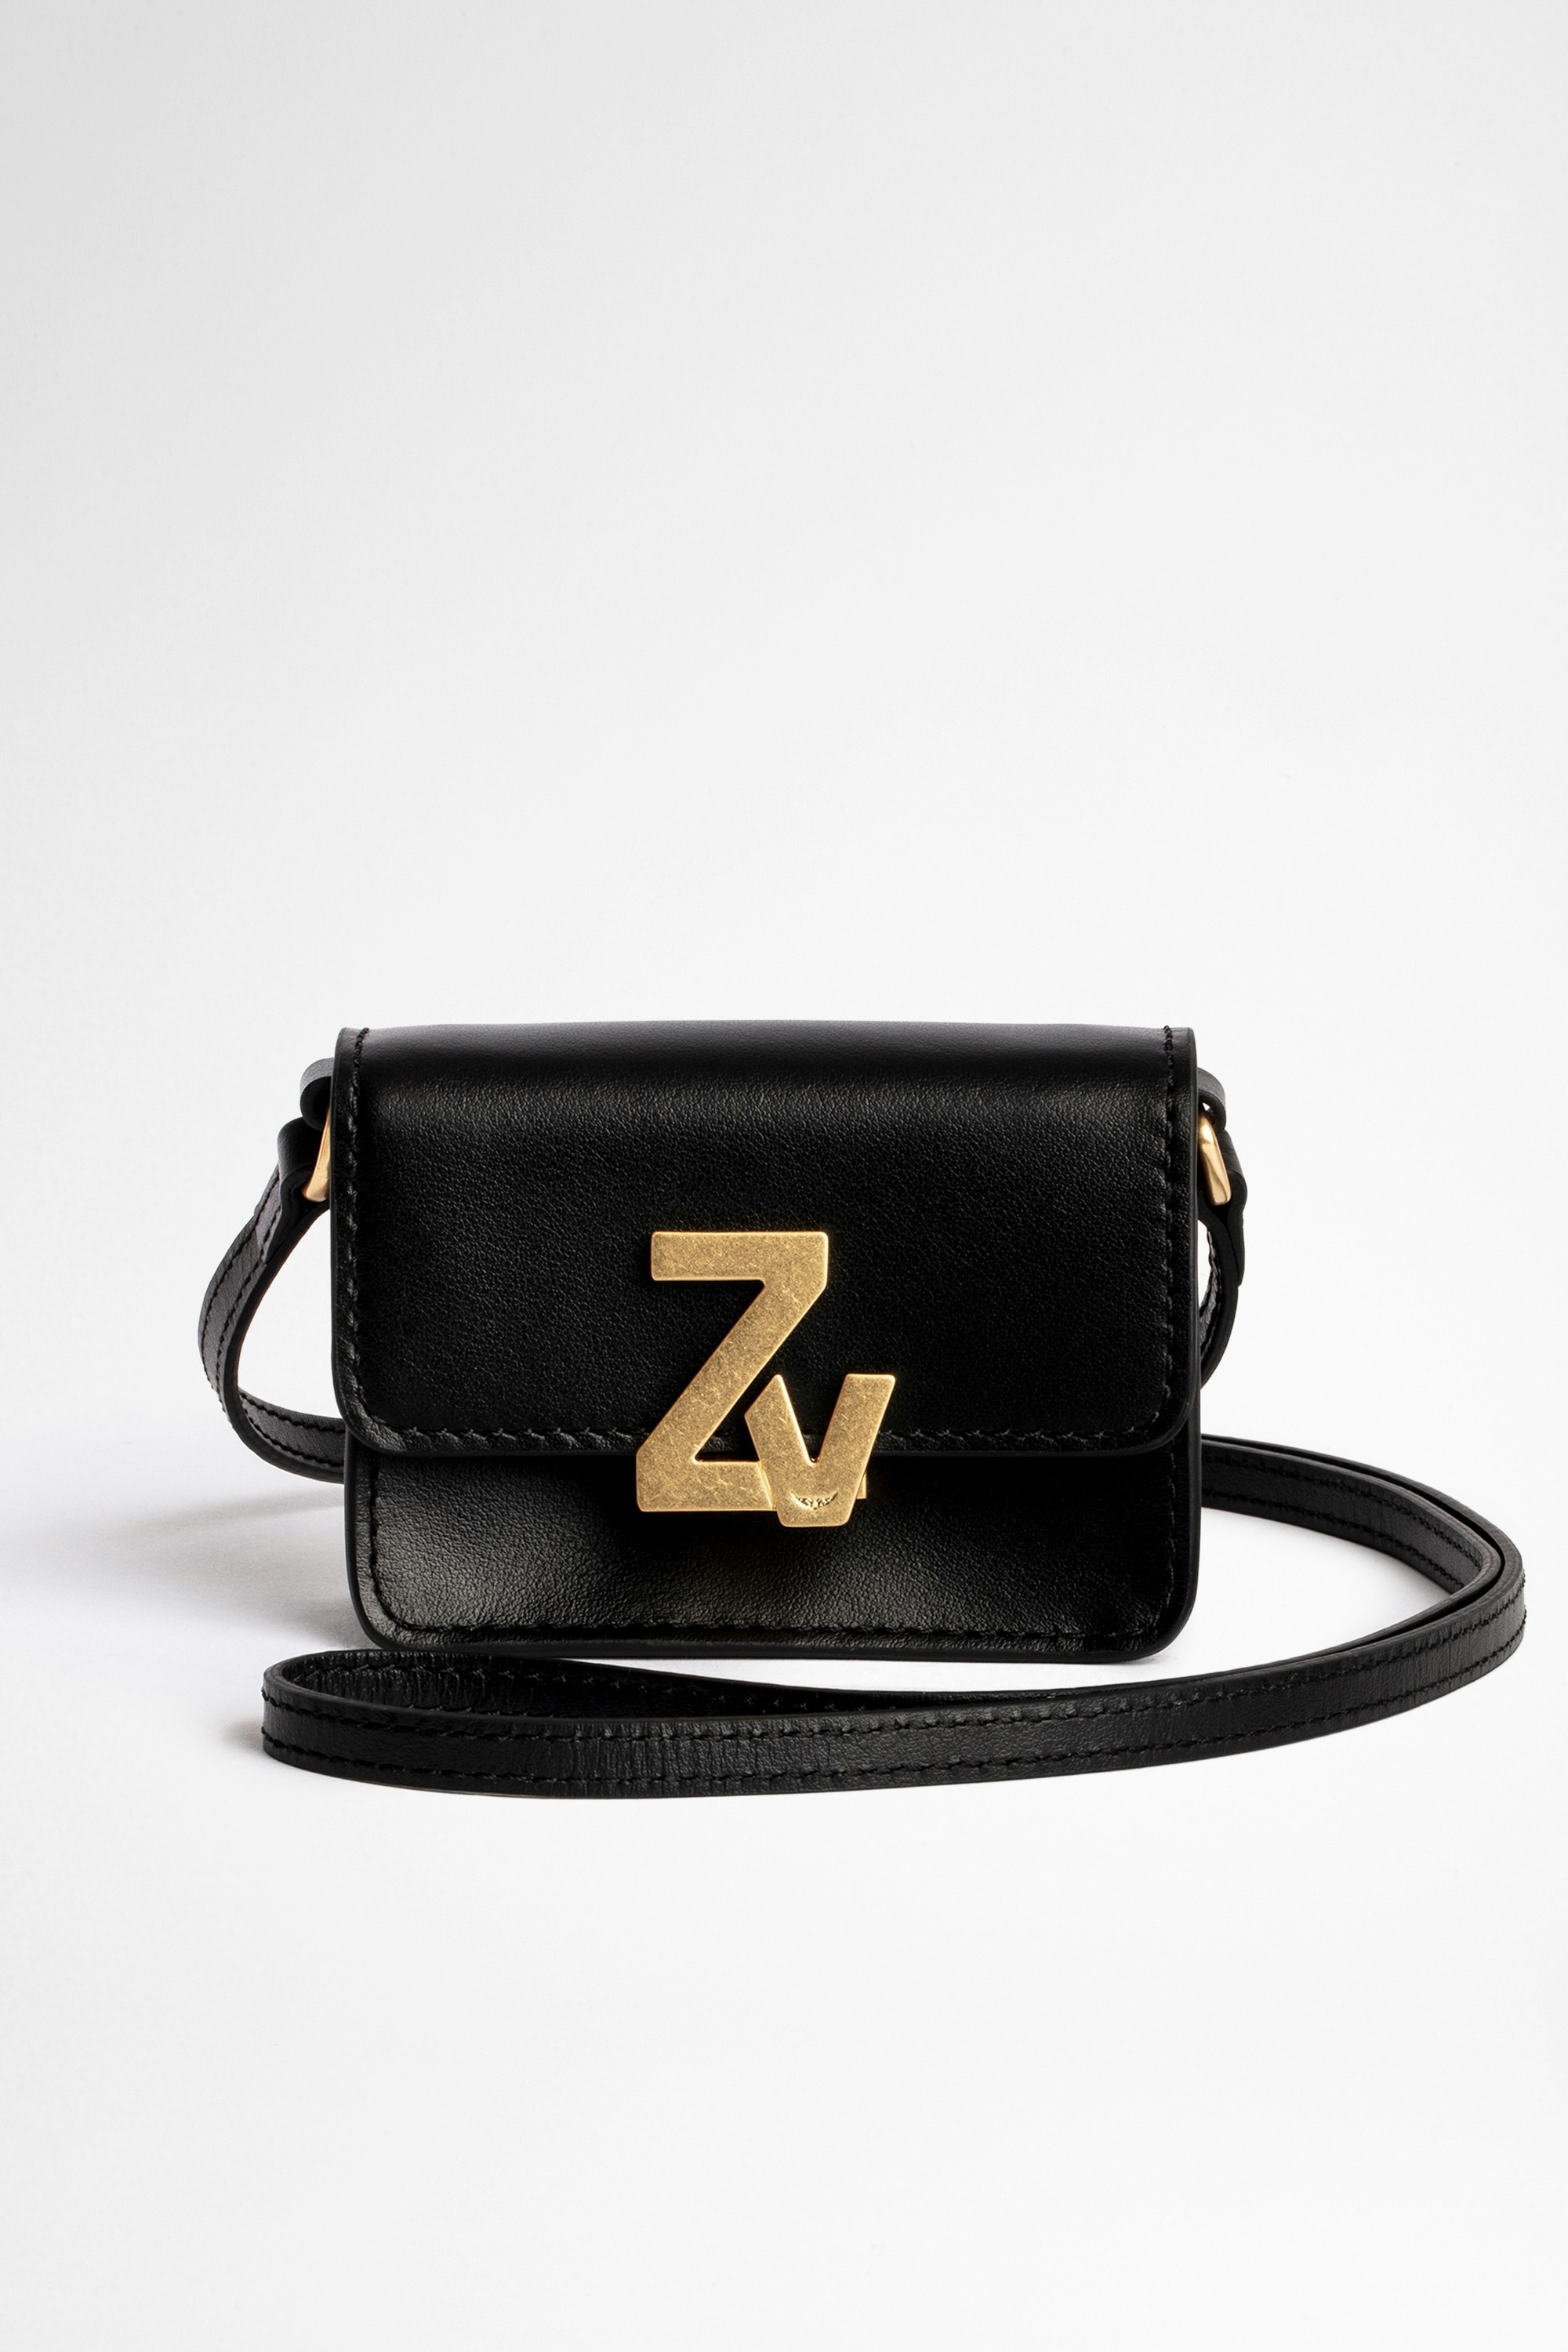 Damentasche Wallet ZV Initiale City Grigri Leder Kleine Wallet-Damentasche mit Riemen aus schwarzem Leder